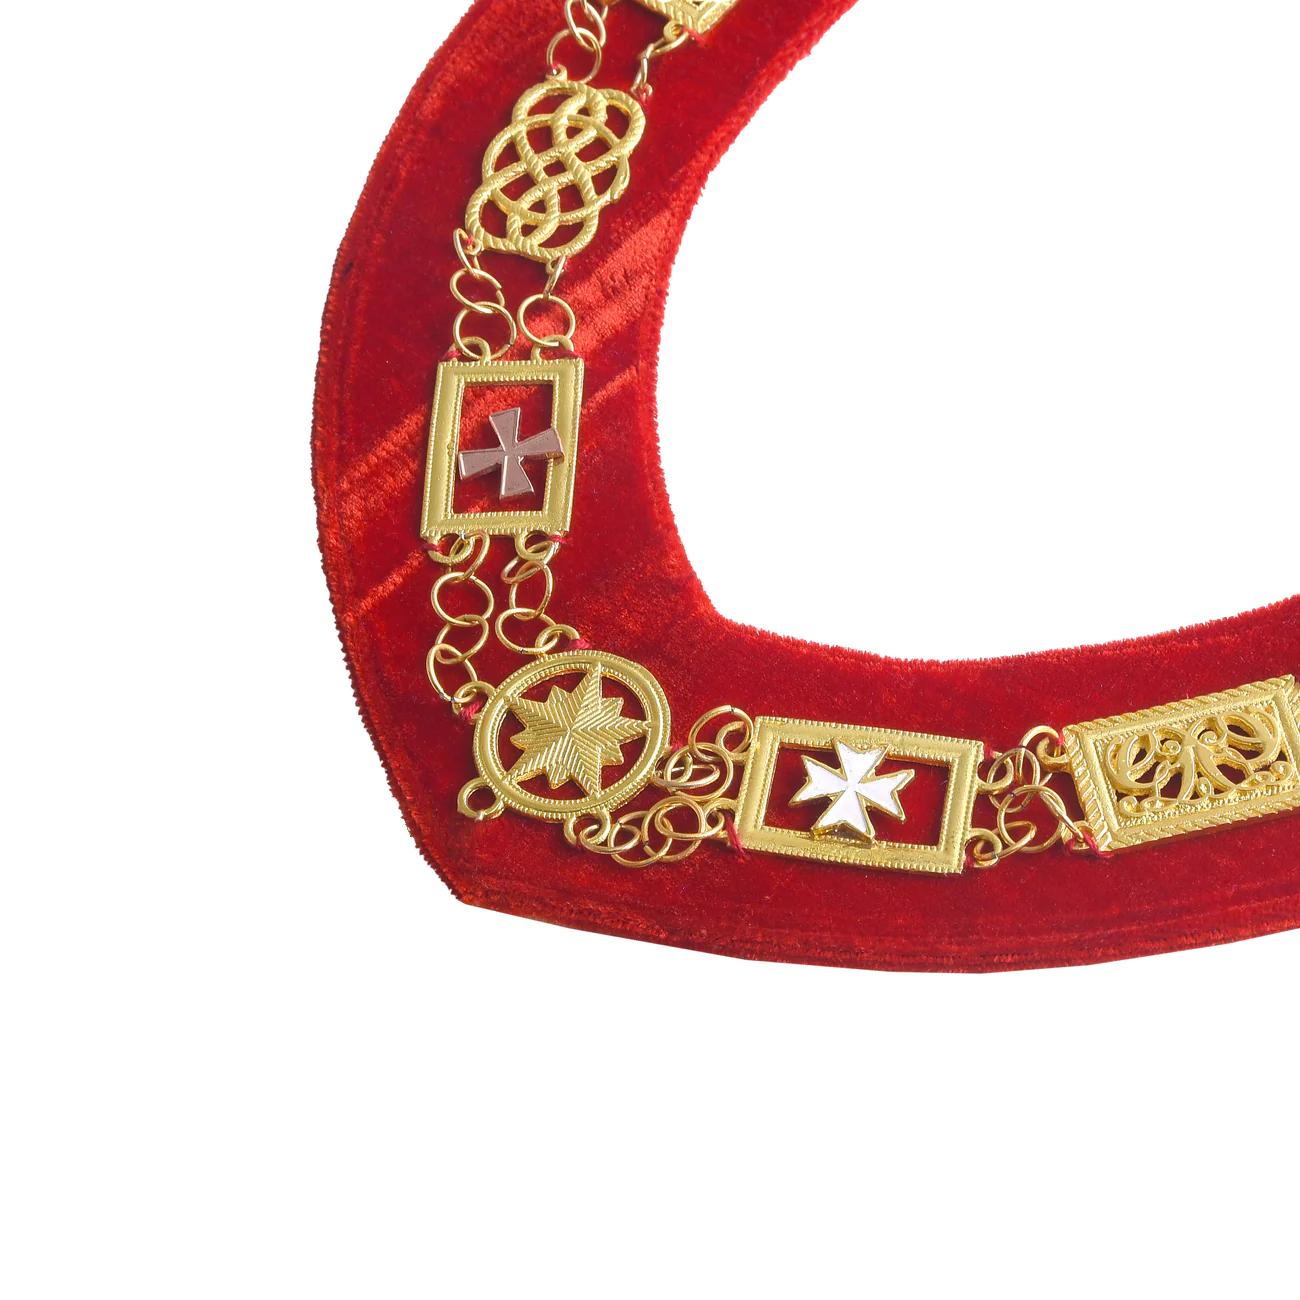 Order Of Malta Chain Collar - Gold With Red Velvet Backing - Bricks Masons